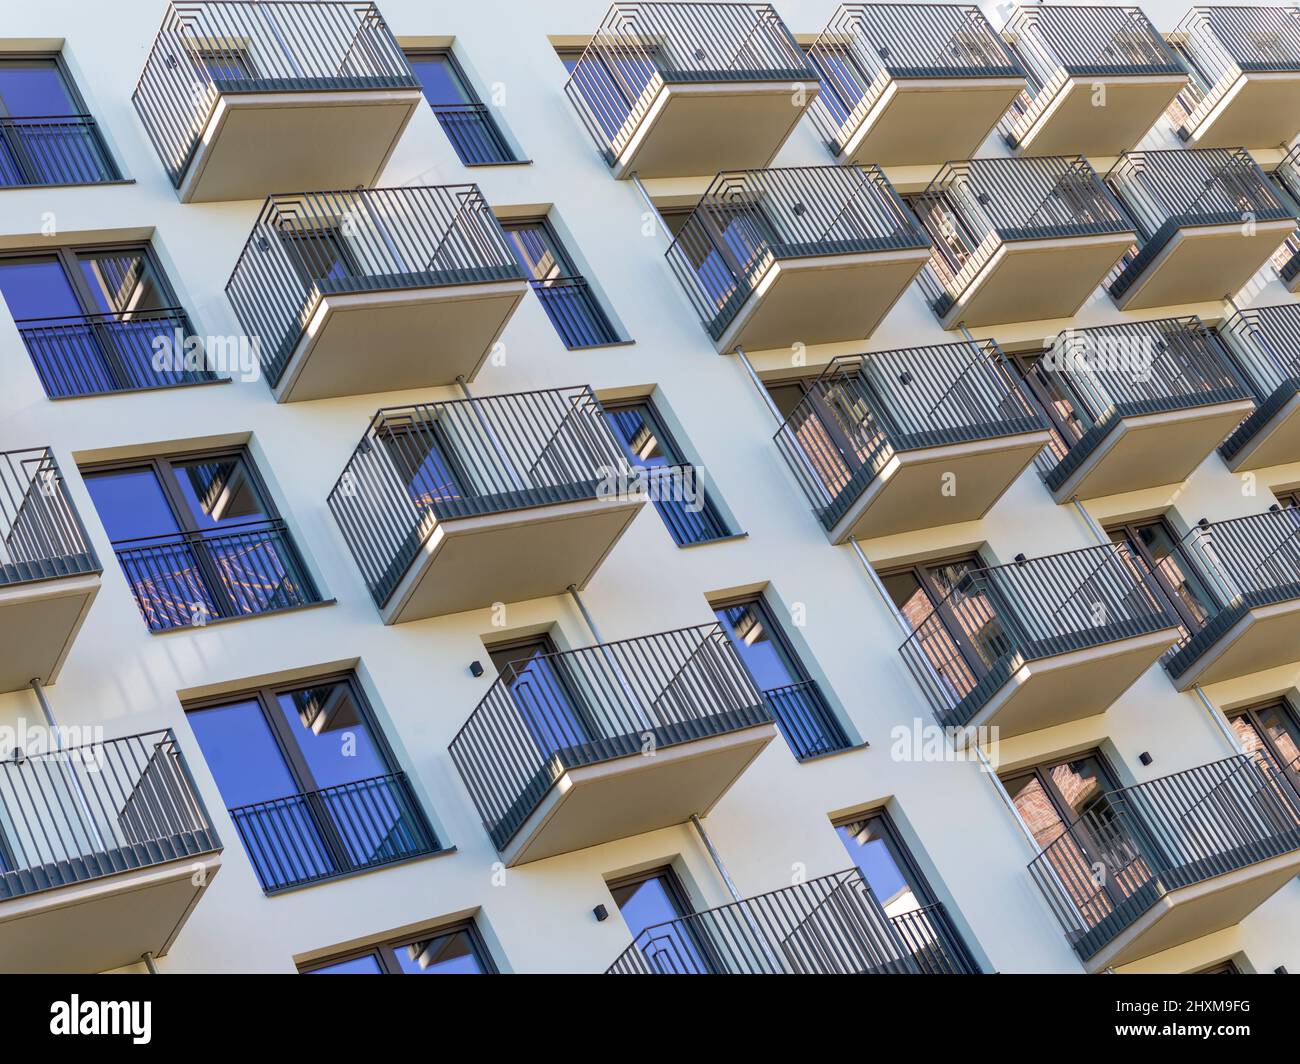 Fassade eines modernen Wohngebäudes in Amburgo, Deutschland Foto Stock